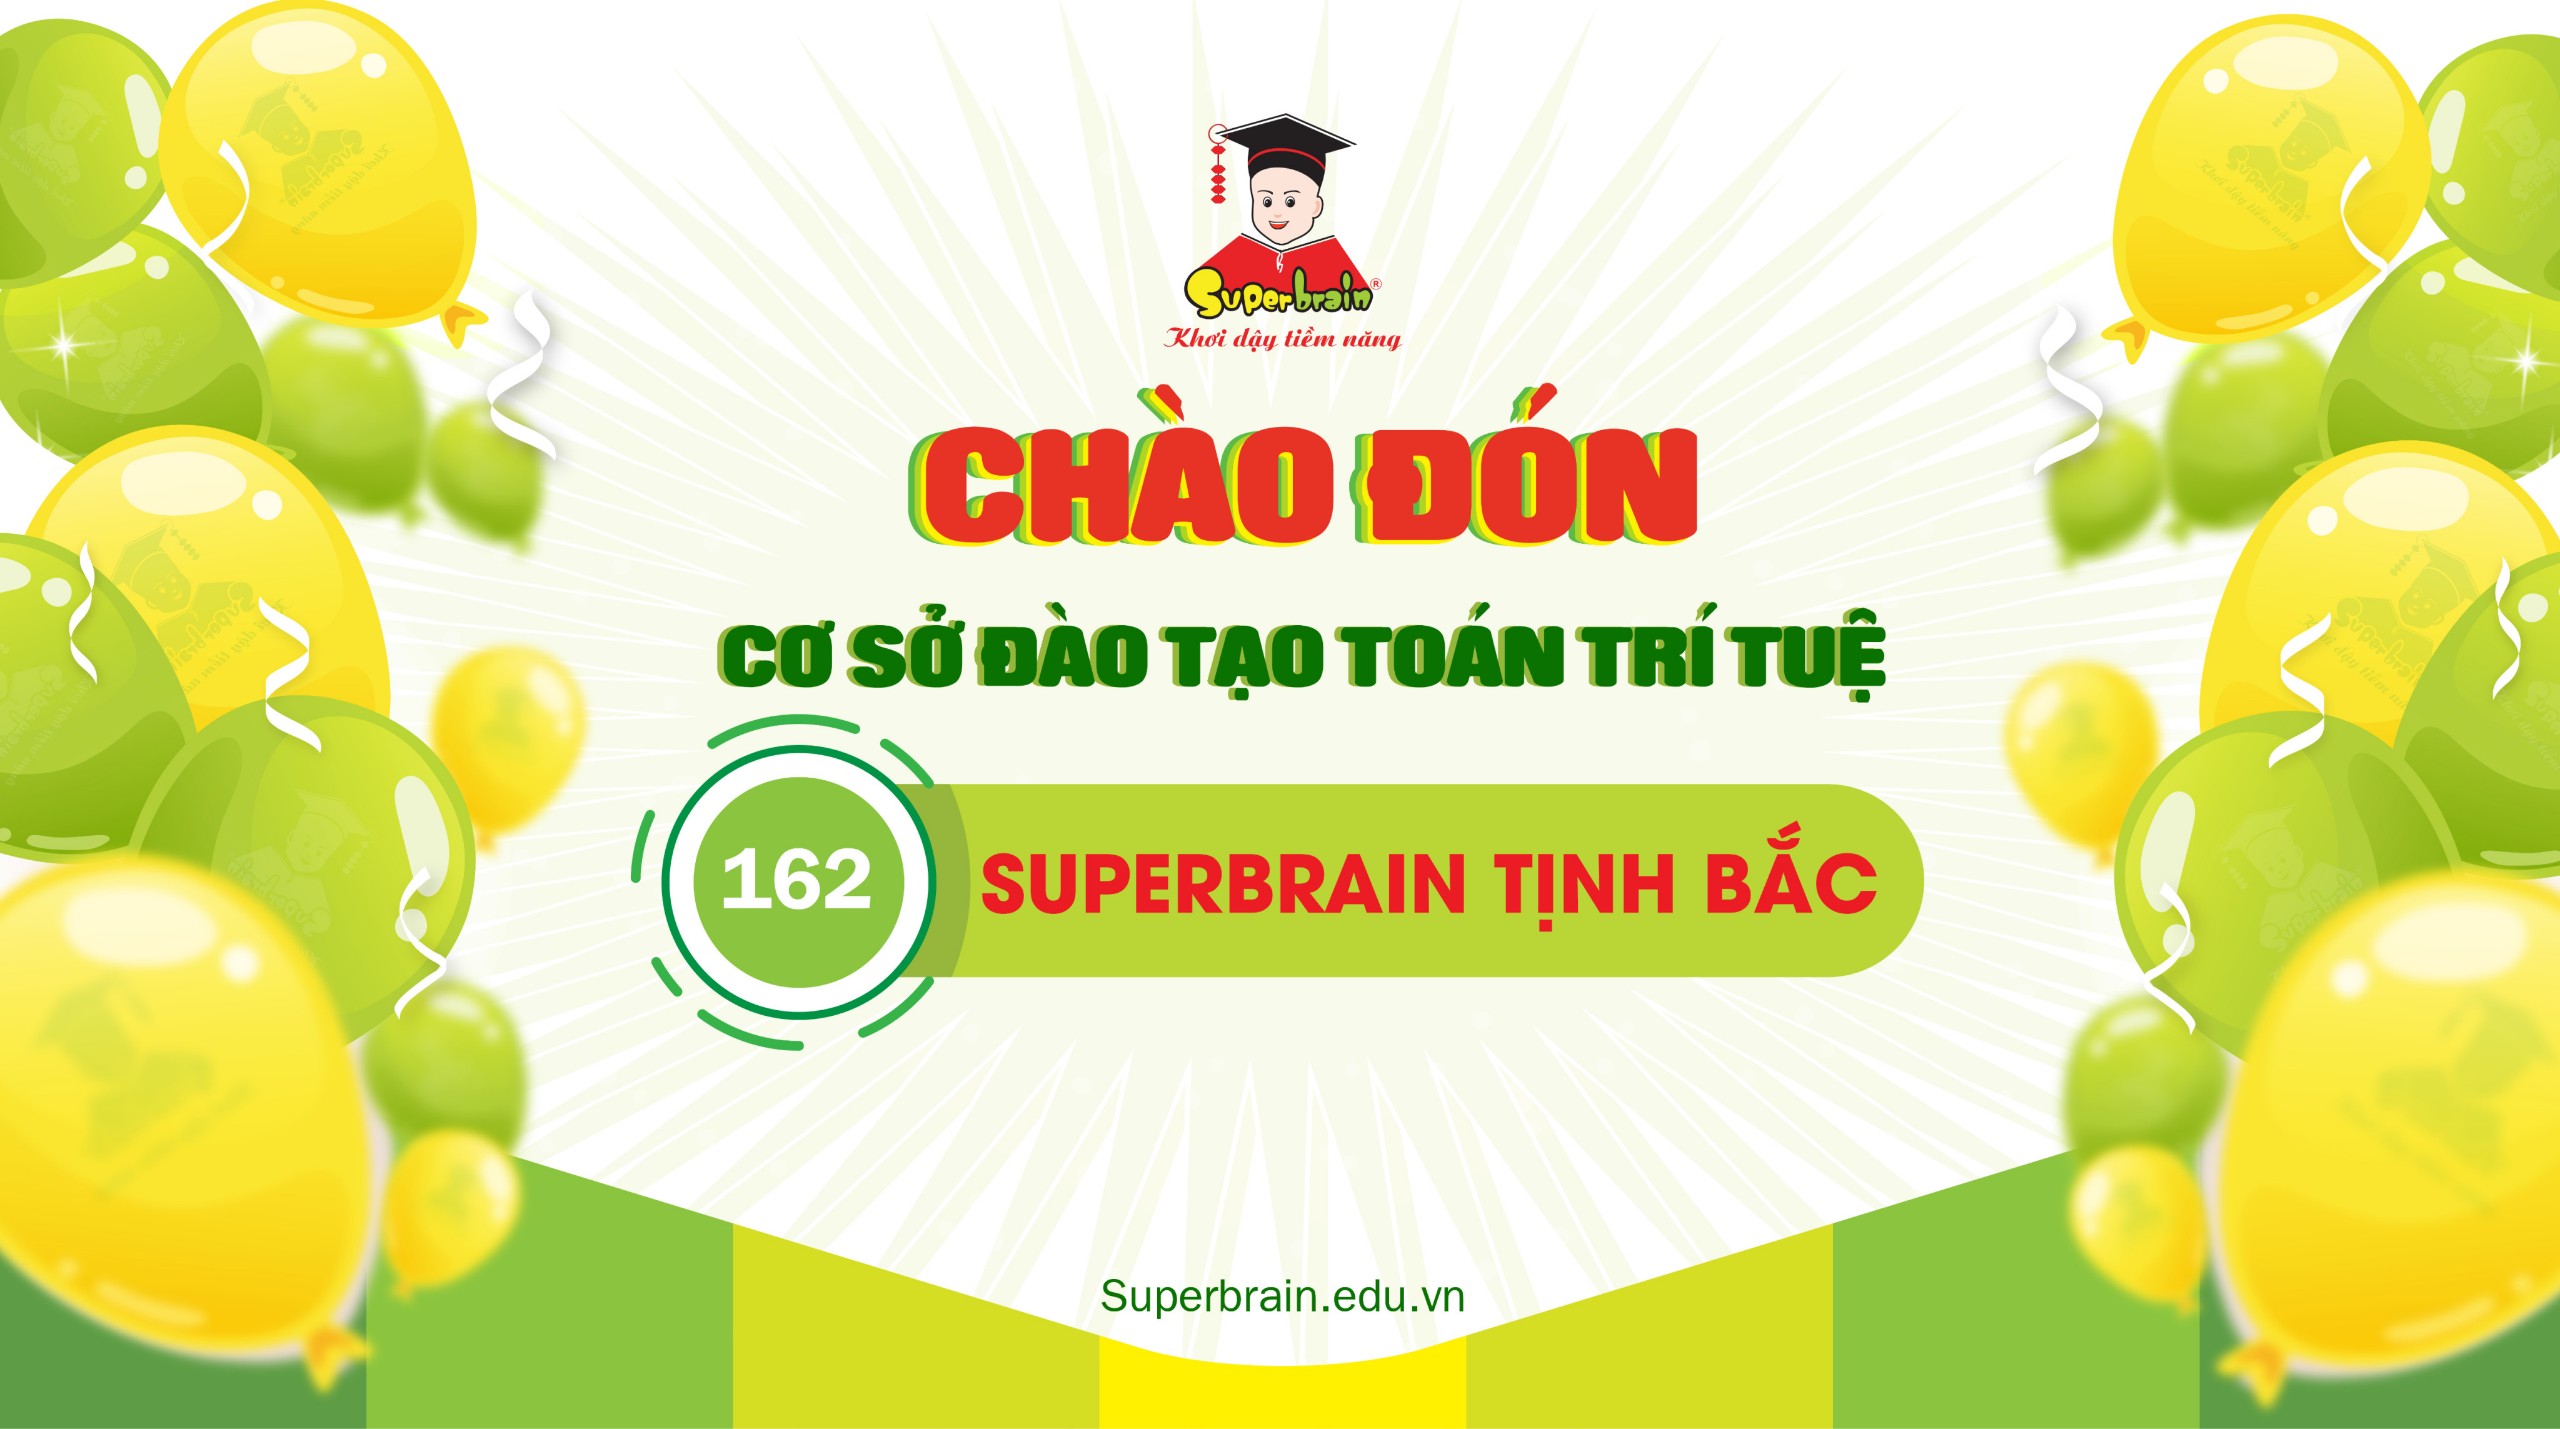 TƯNG BỪNG KHAI TRƯƠNG SUPERBRAIN CƠ SỞ 162 – SUPERBRAIN TỊNH BẮC